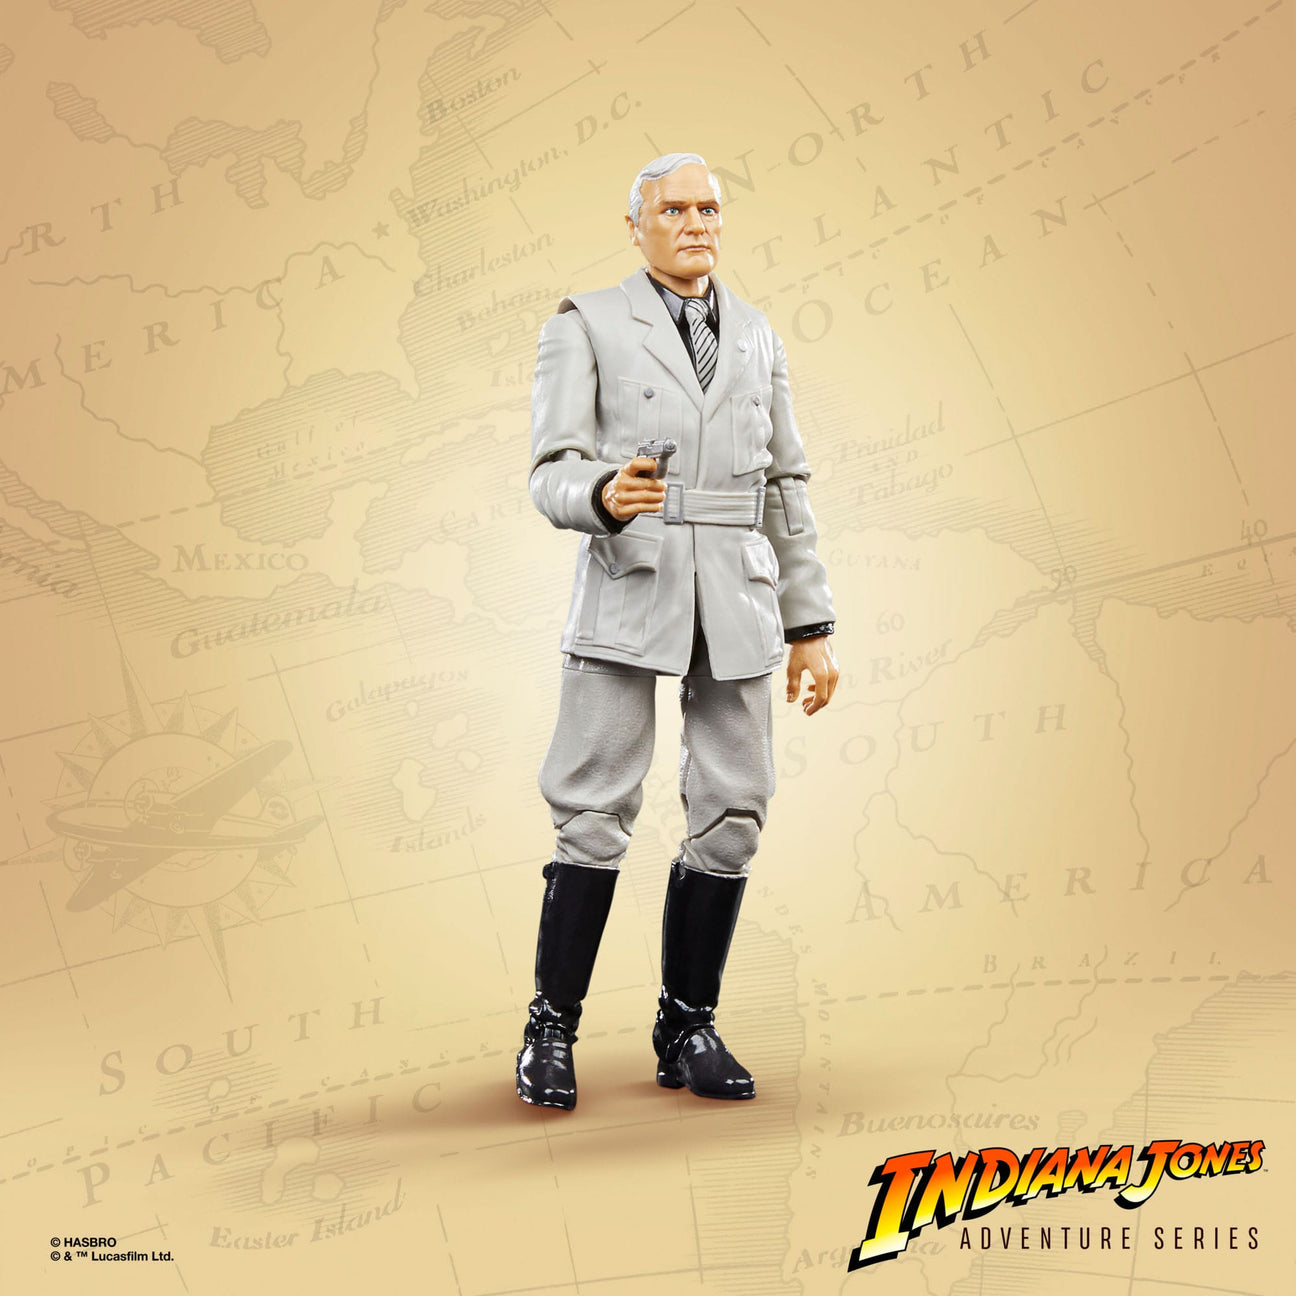 Indiana Jones Adventure Series: Walter Donovan (The Last Crusade)-Actionfiguren-Hasbro-Mighty Underground